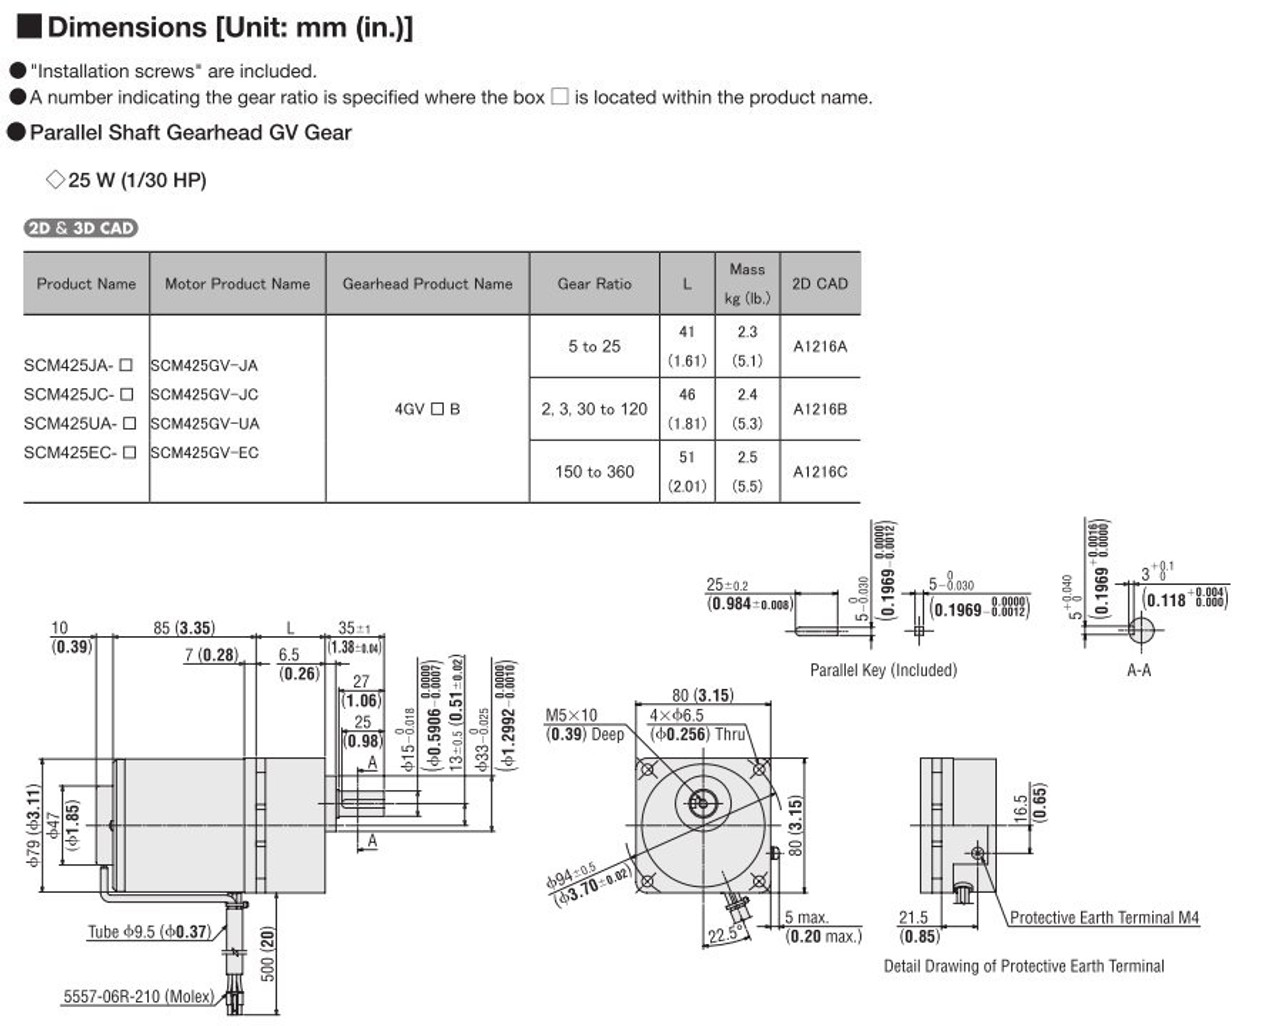 SCM425EC-15 / DSCD25EC - Dimensions